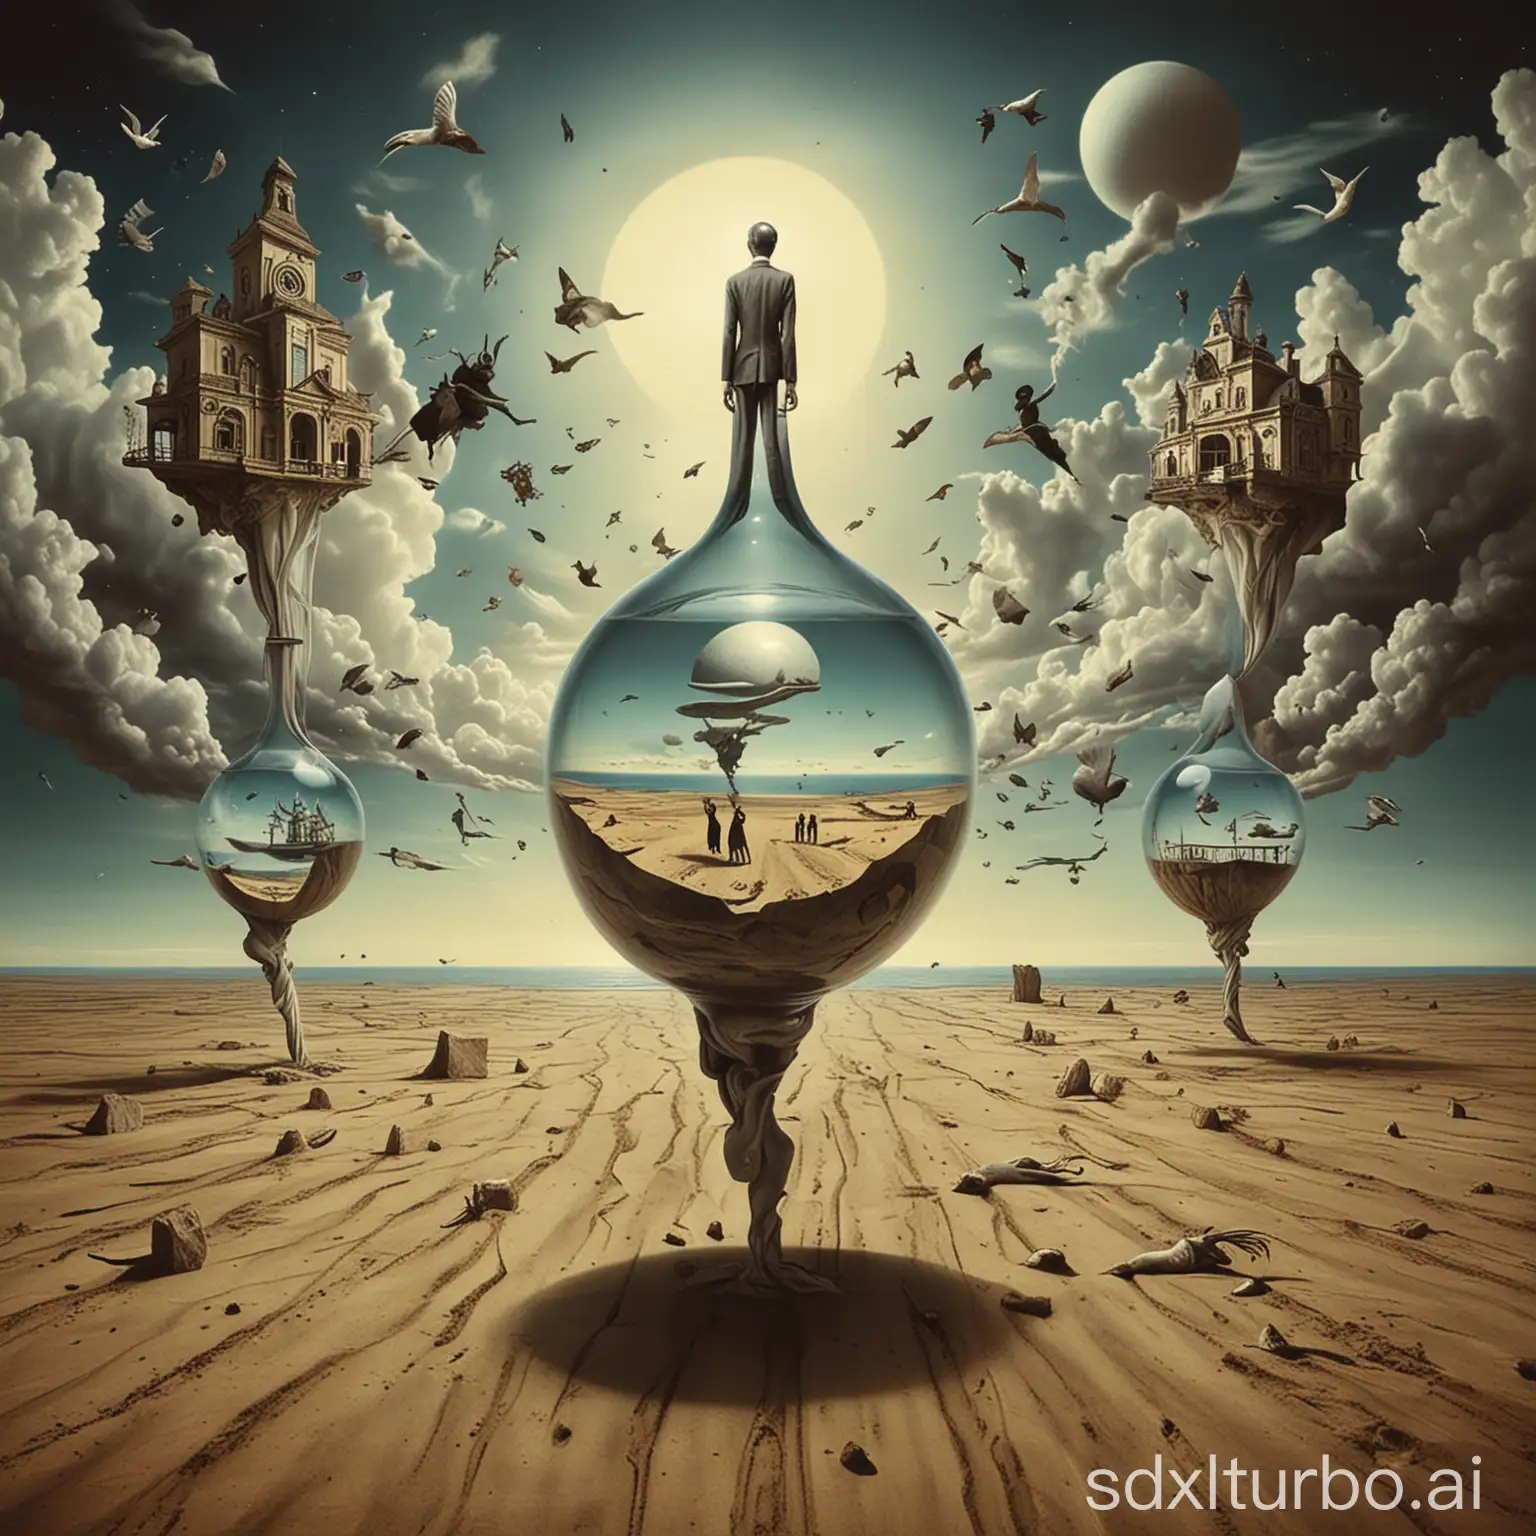 Dreamlike-Surrealism-Floating-Clocks-in-a-Desert-Landscape